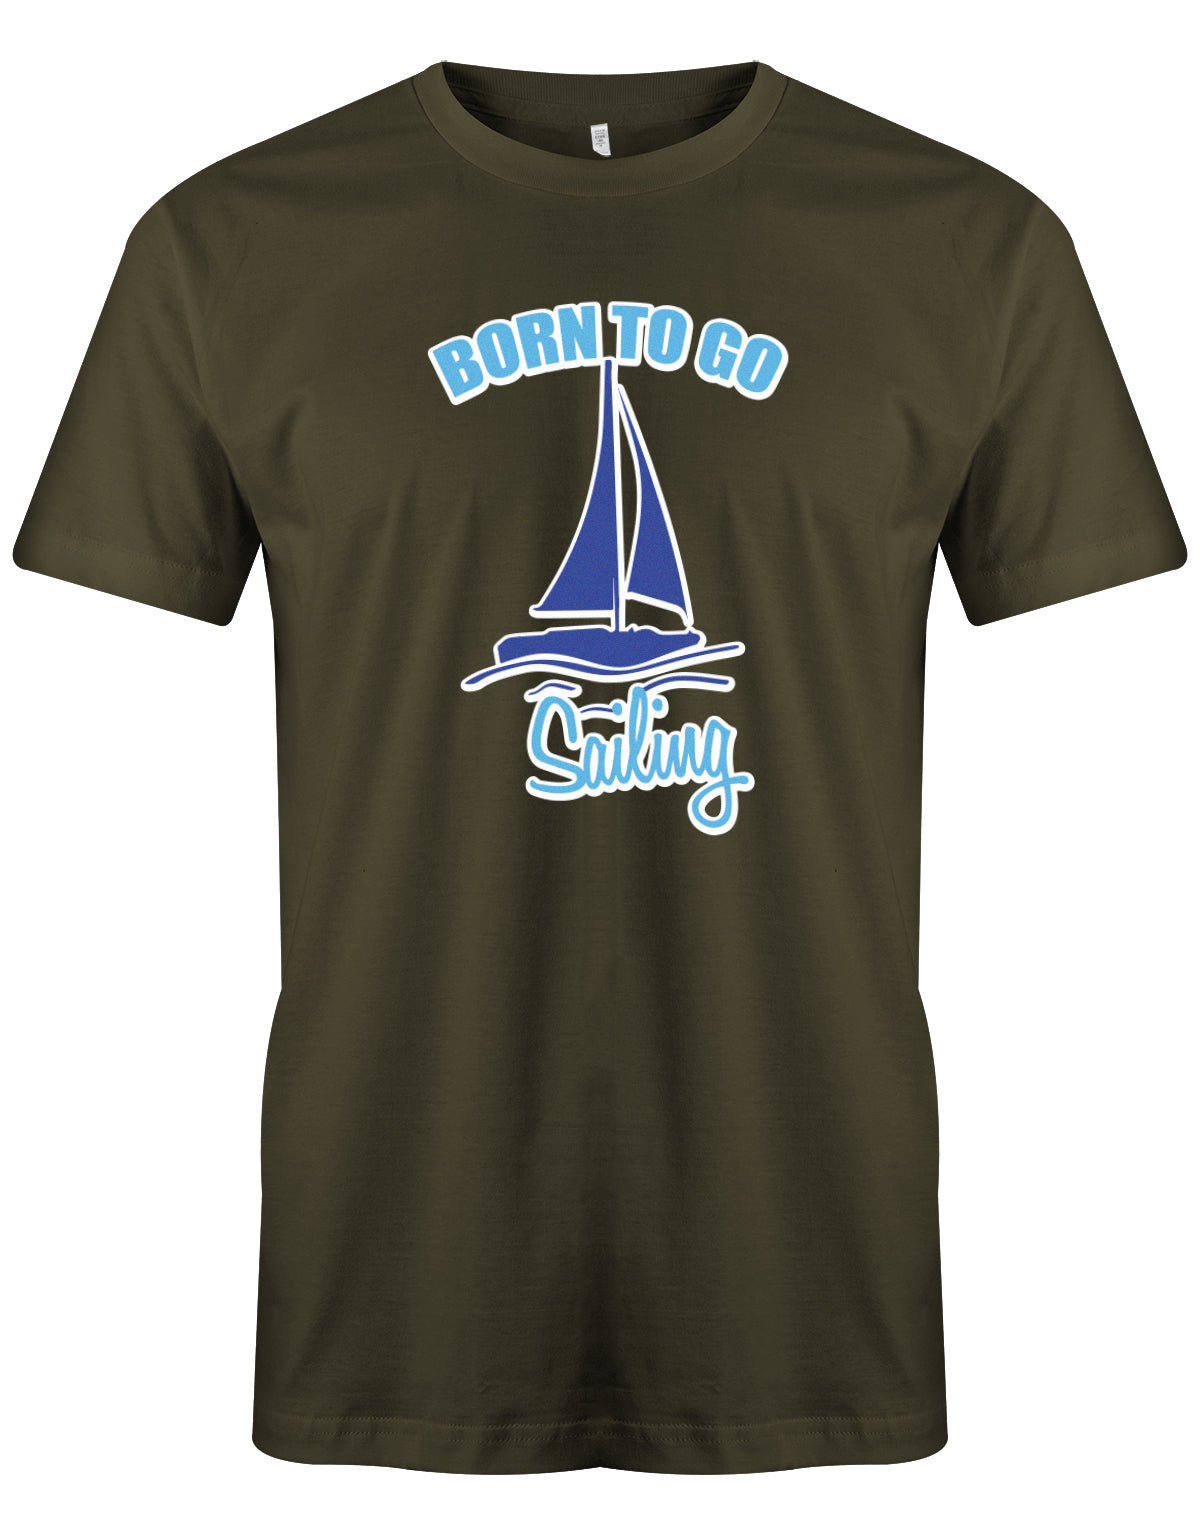 Das Segler t-shirt bedruckt mit "Born to go sailing - geboren um segeln zu gehen". Army